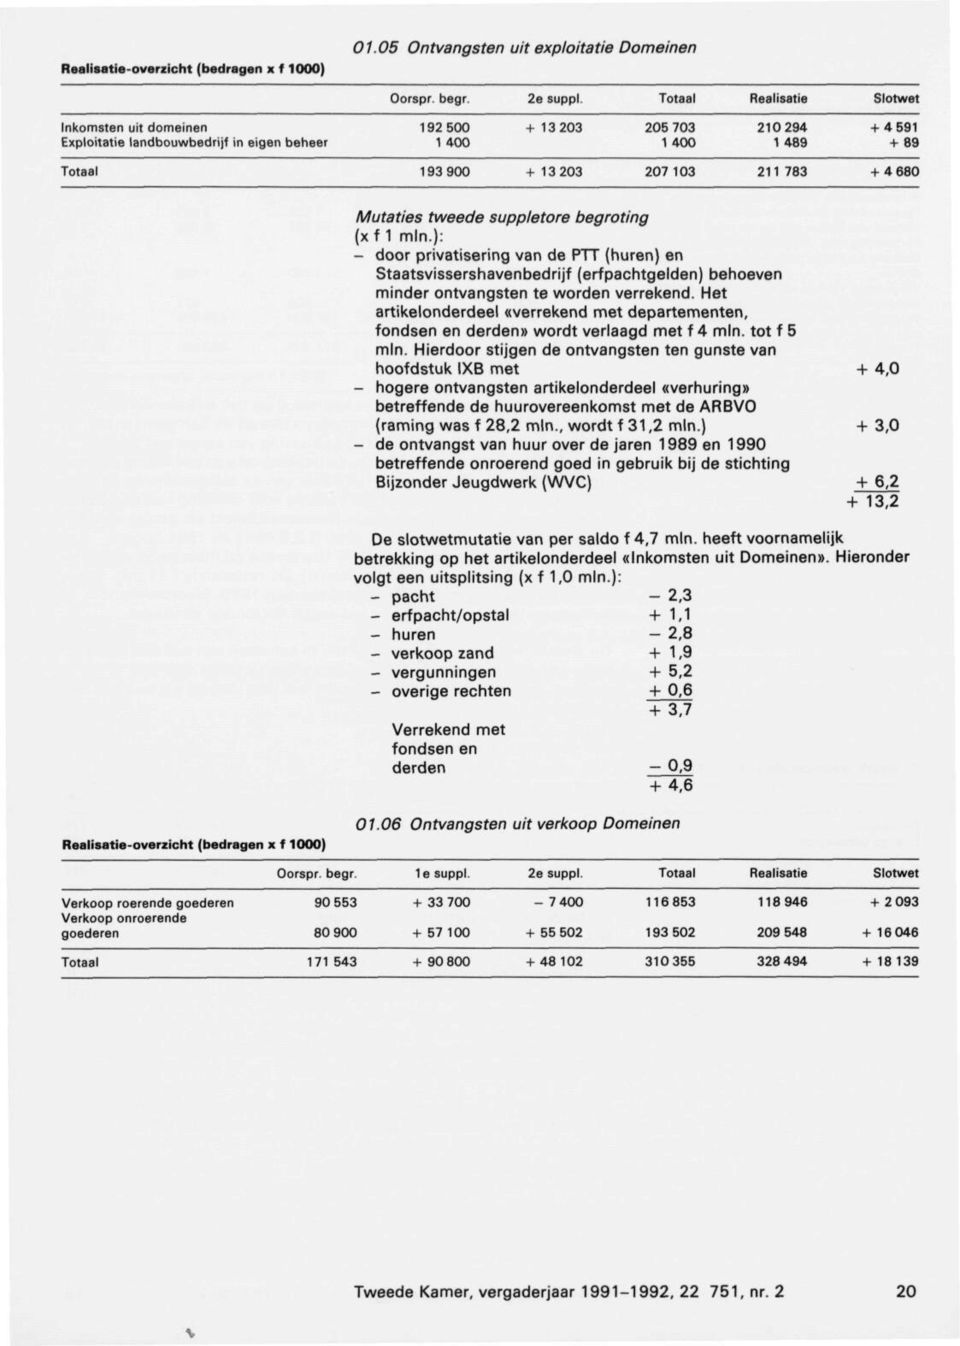 Mutaties tweede suppletore begroting (xf 1 mln.): - door privatisering van de PTT (huren) en Staatsvissershavenbedrijf (erfpachtgelden) behoeven minder ontvangsten te worden verrekend.